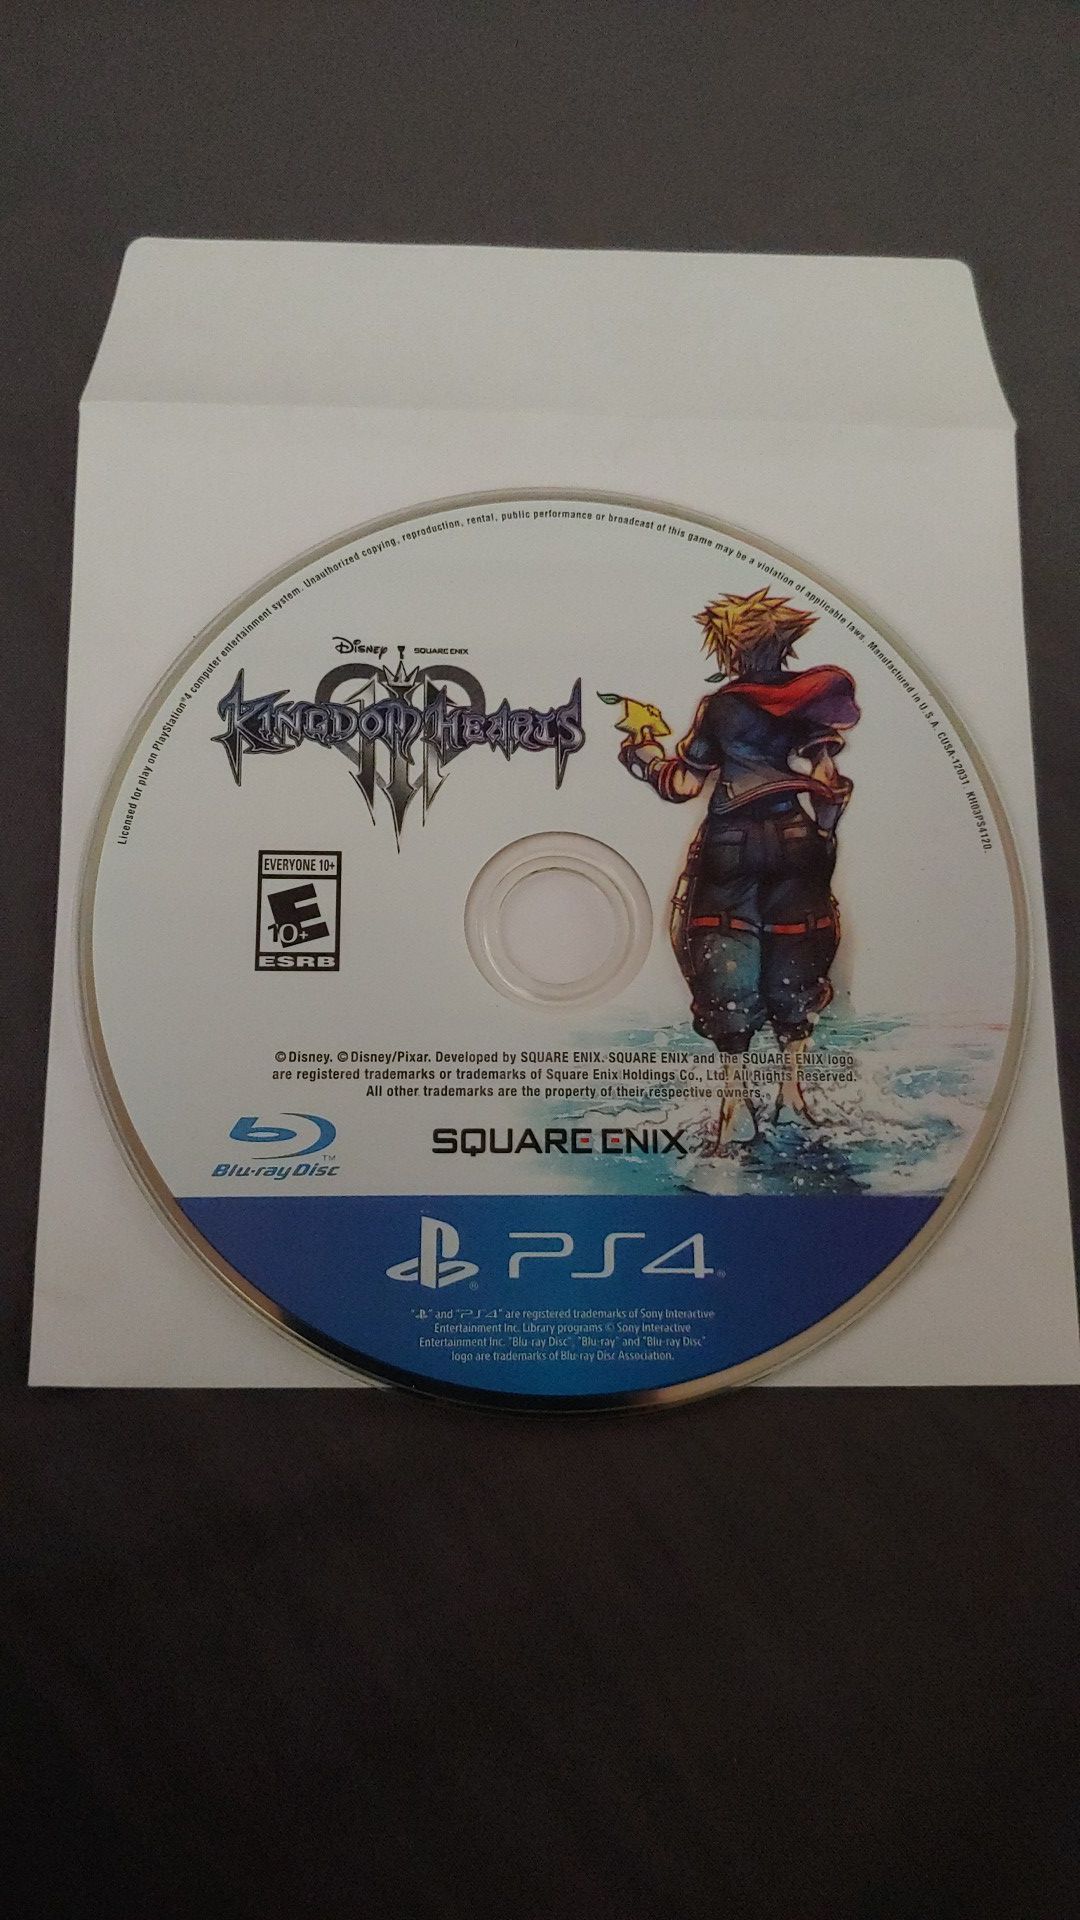 Kingdom Hearts 3 (PS4)